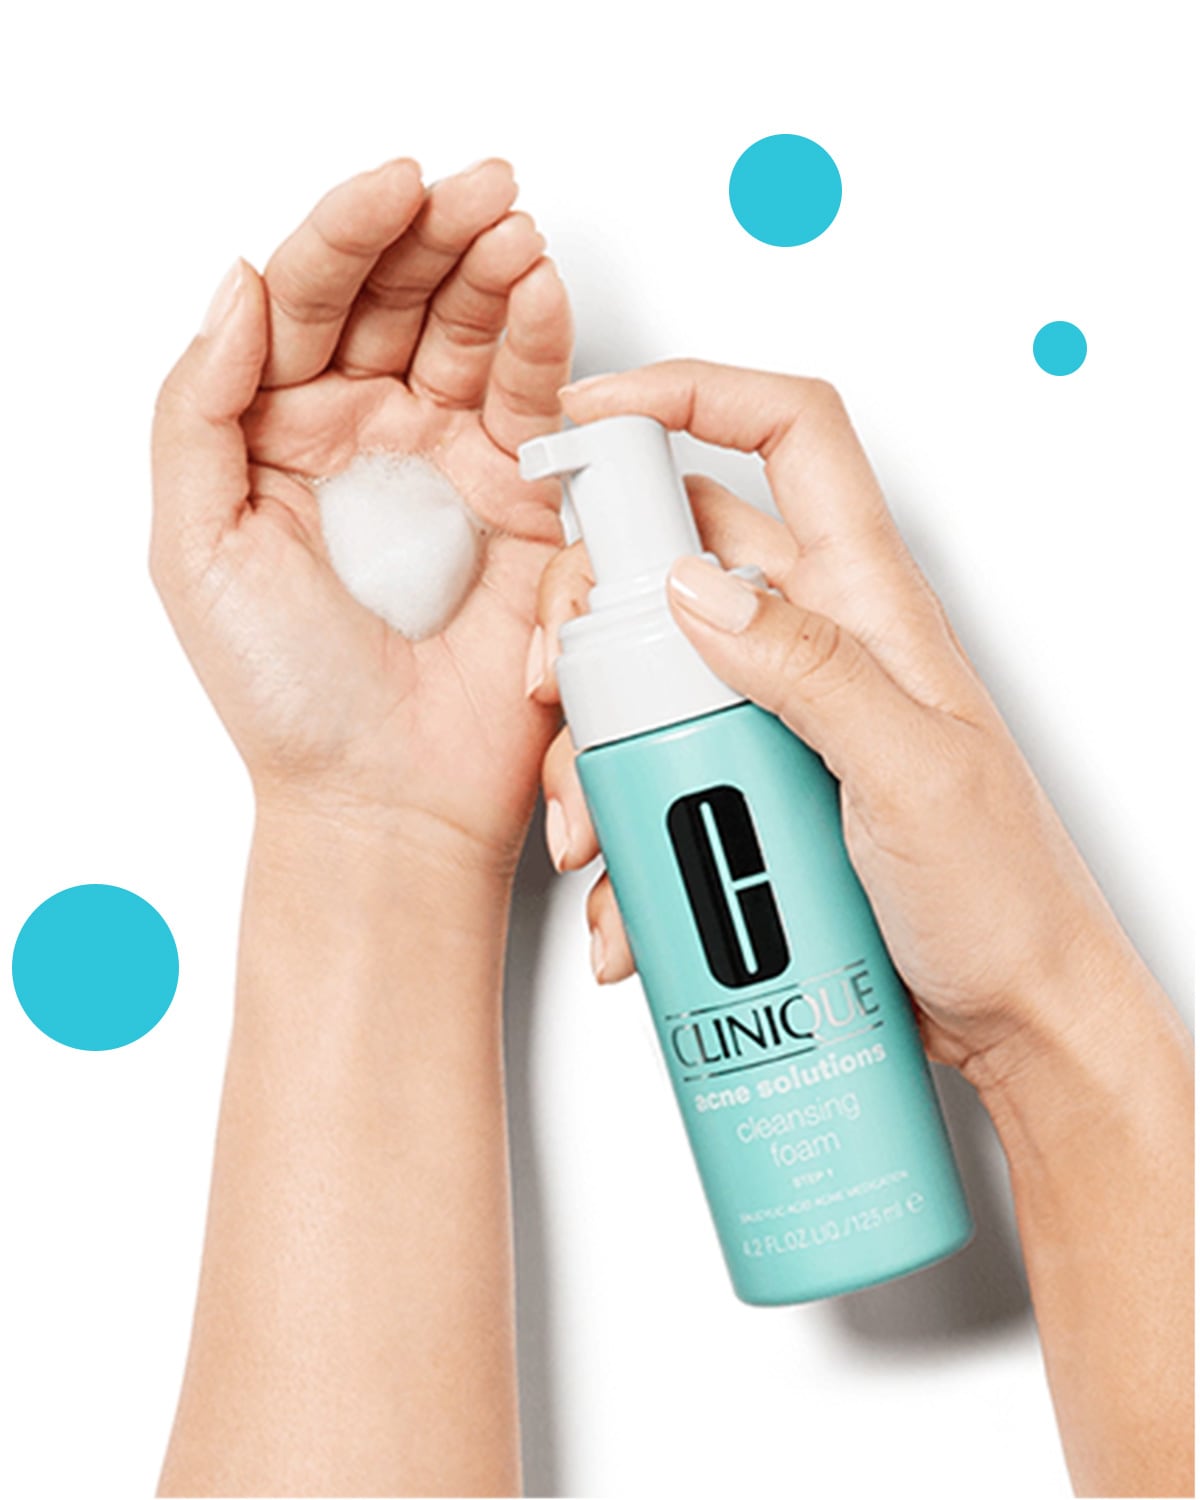 Pianka do mycia twarzy Anti-Blemish Solutions Cleasing Foam wyciskana na dłoń.